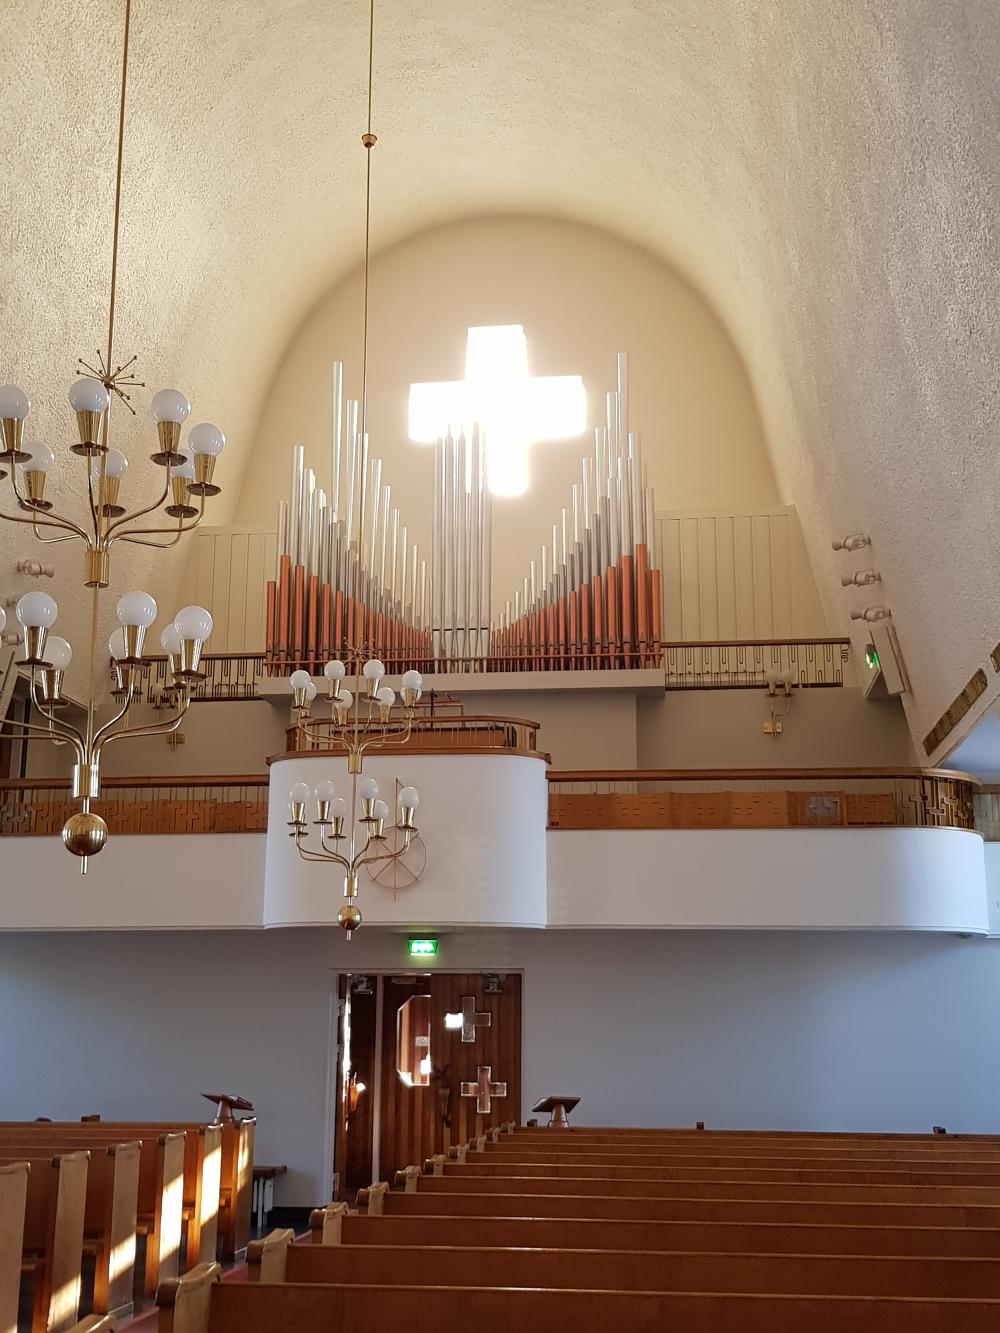 Enontekiön kirkon urut, rististä tulee valo, kuvaaja Eija Leppänen